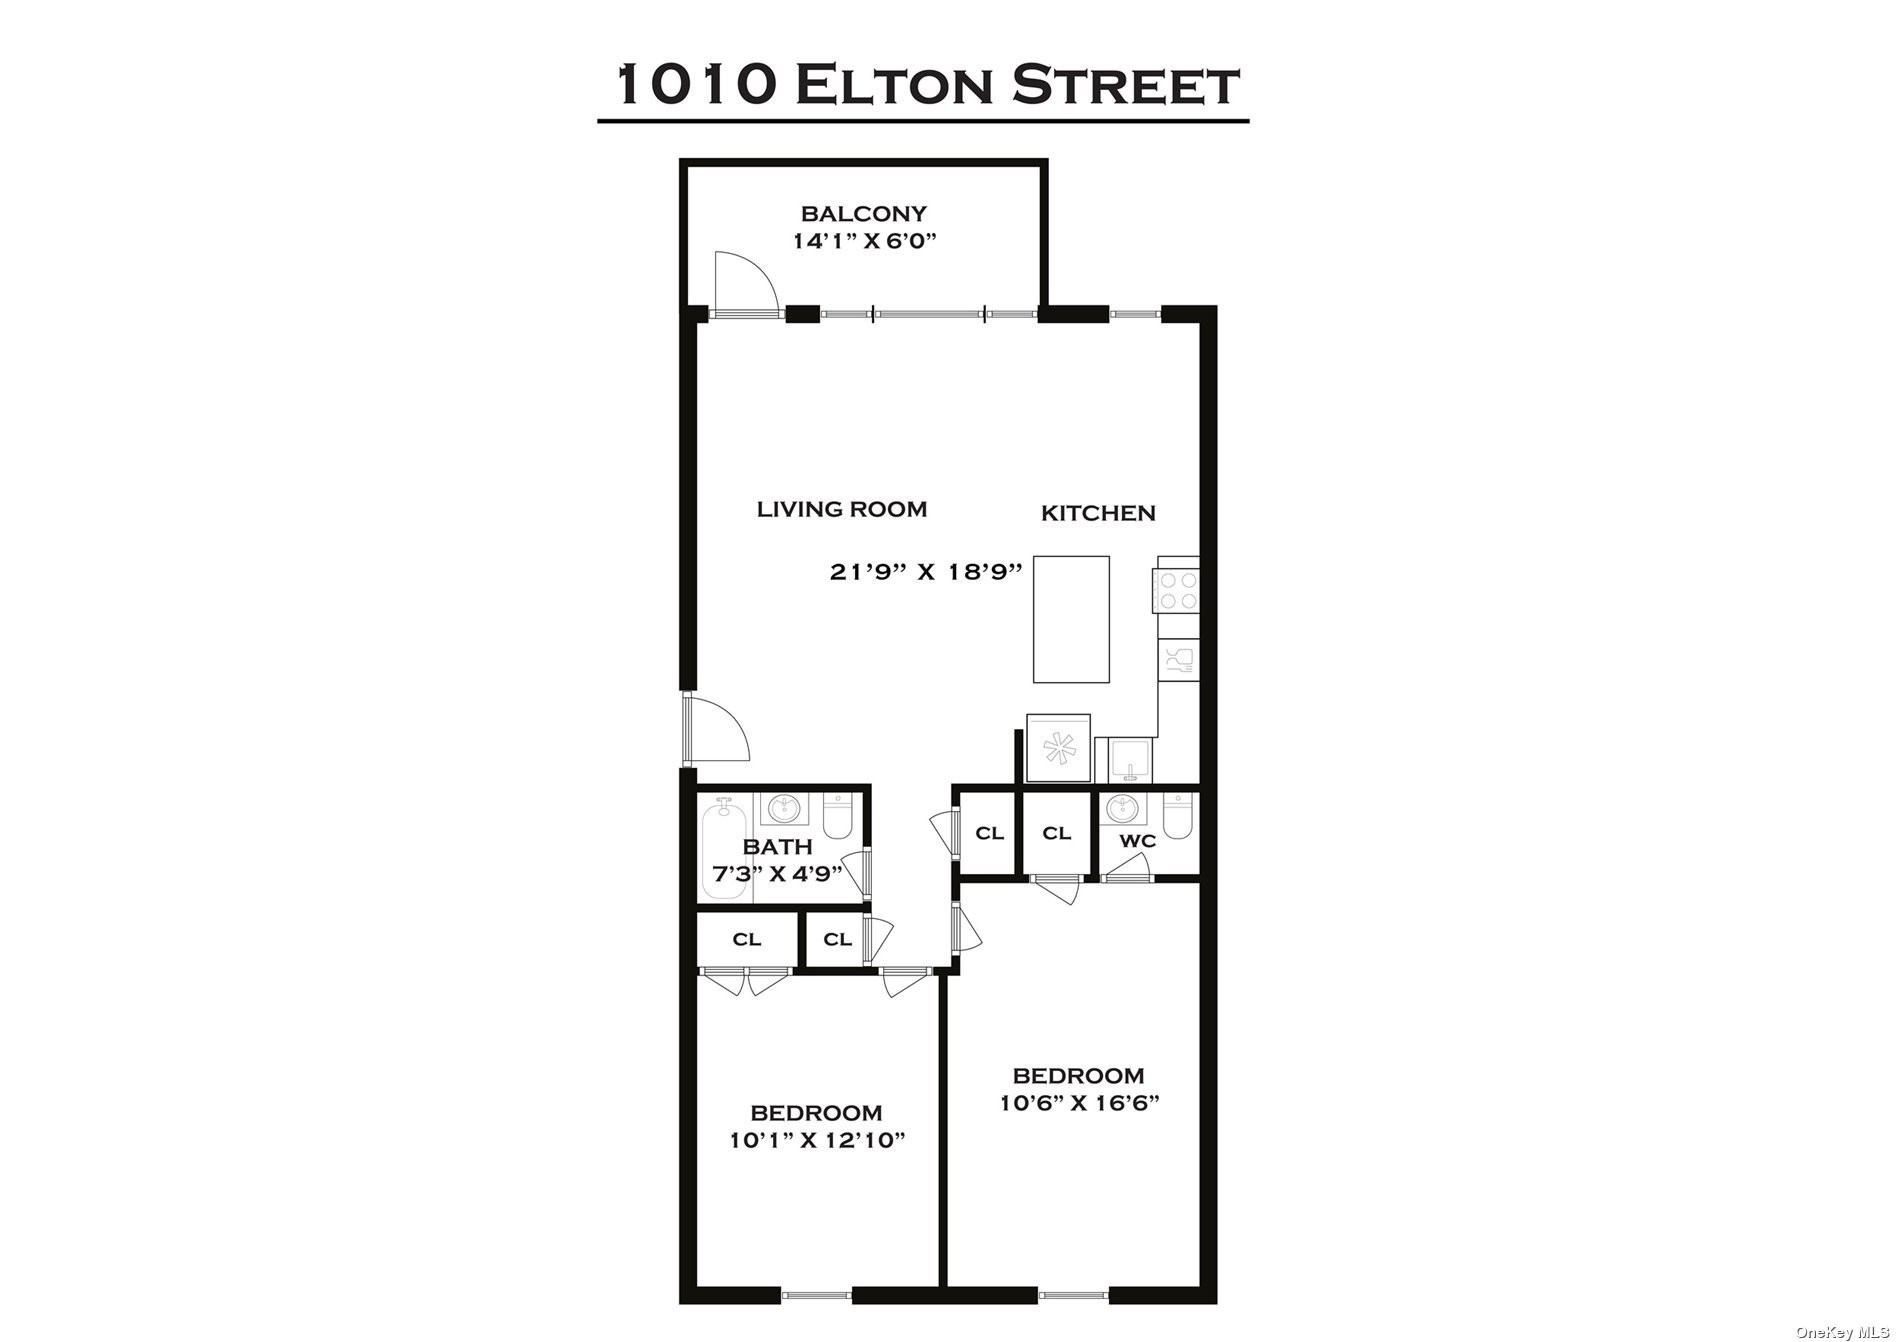 26. 1010 Elton Street